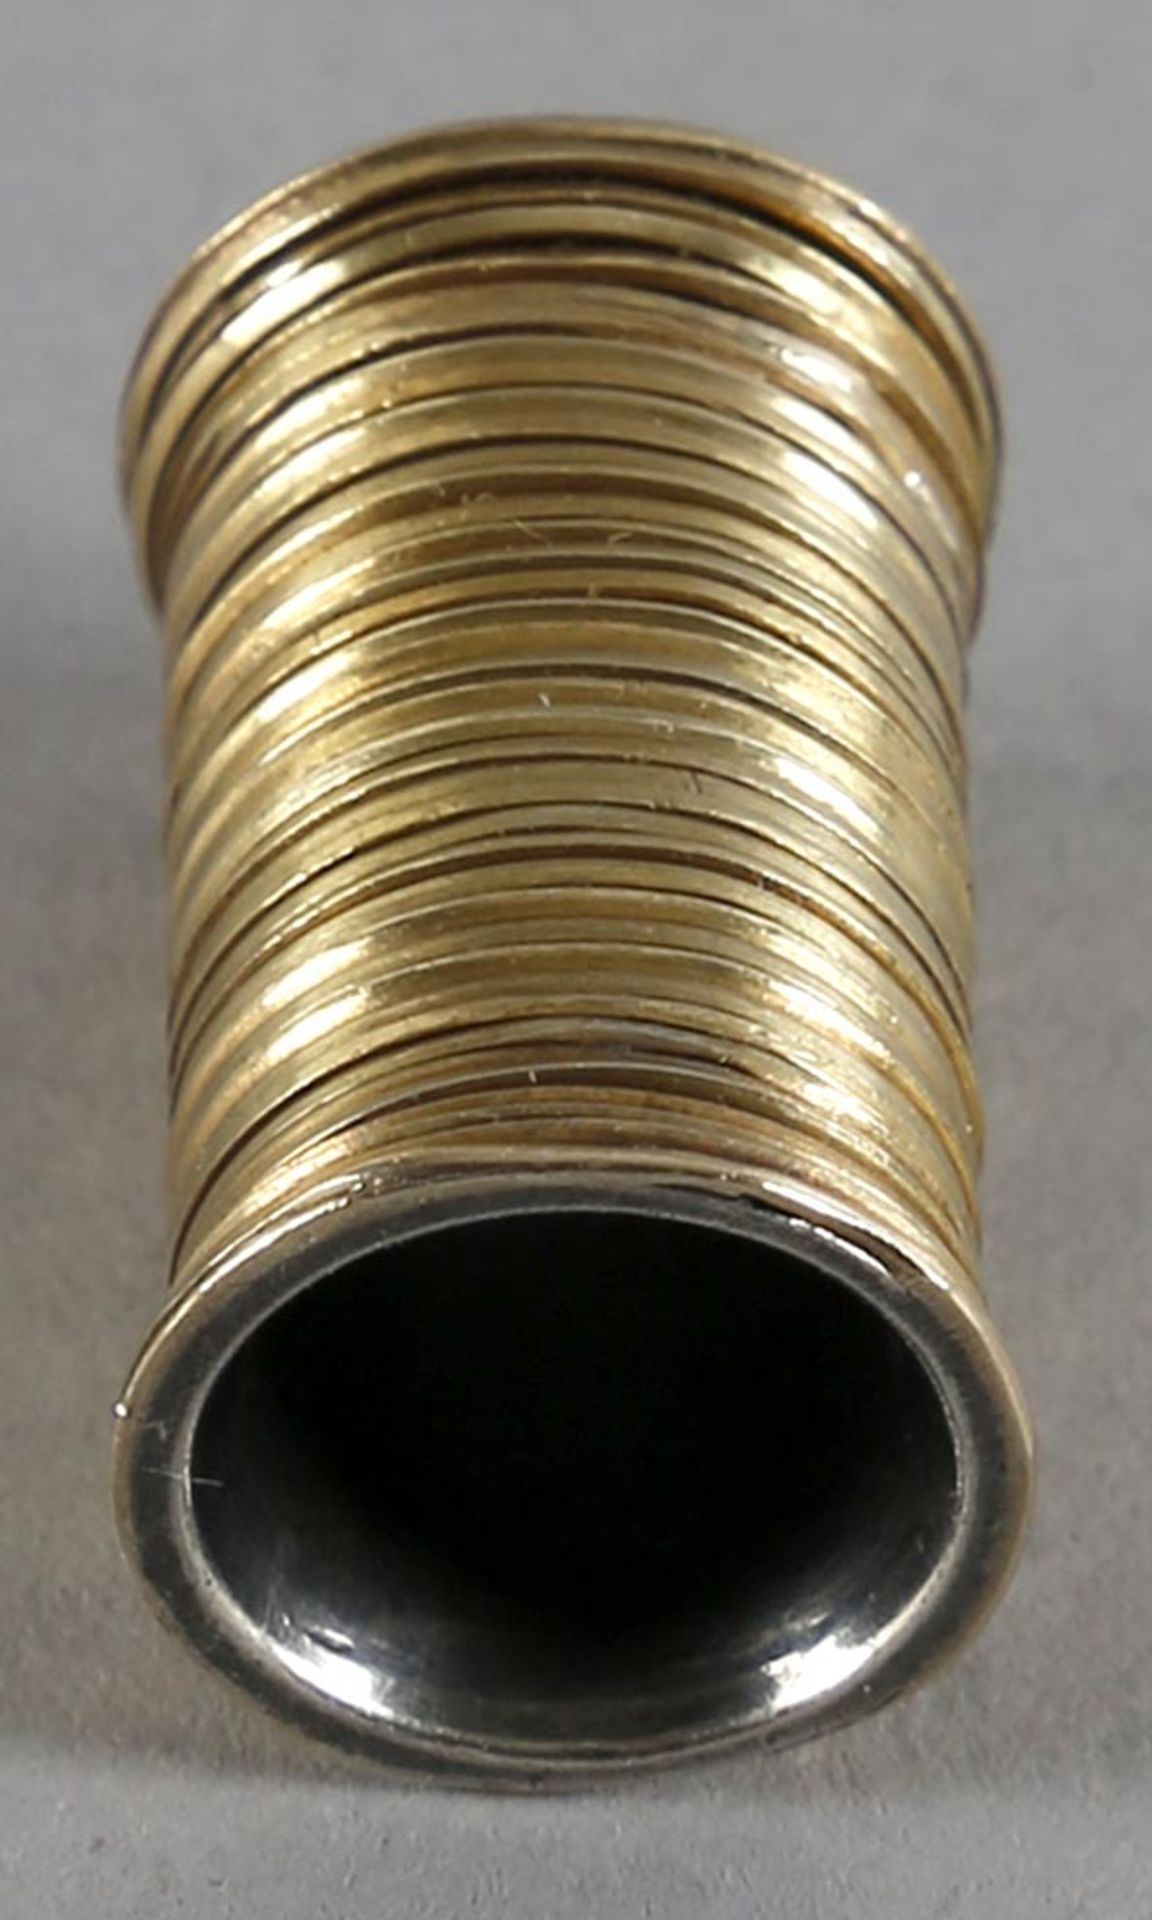 Röhrenförmiger Anhänger, Silber mit Goldwicklung (mind. 18 kt), HandarbeitRänder etwas breiter als